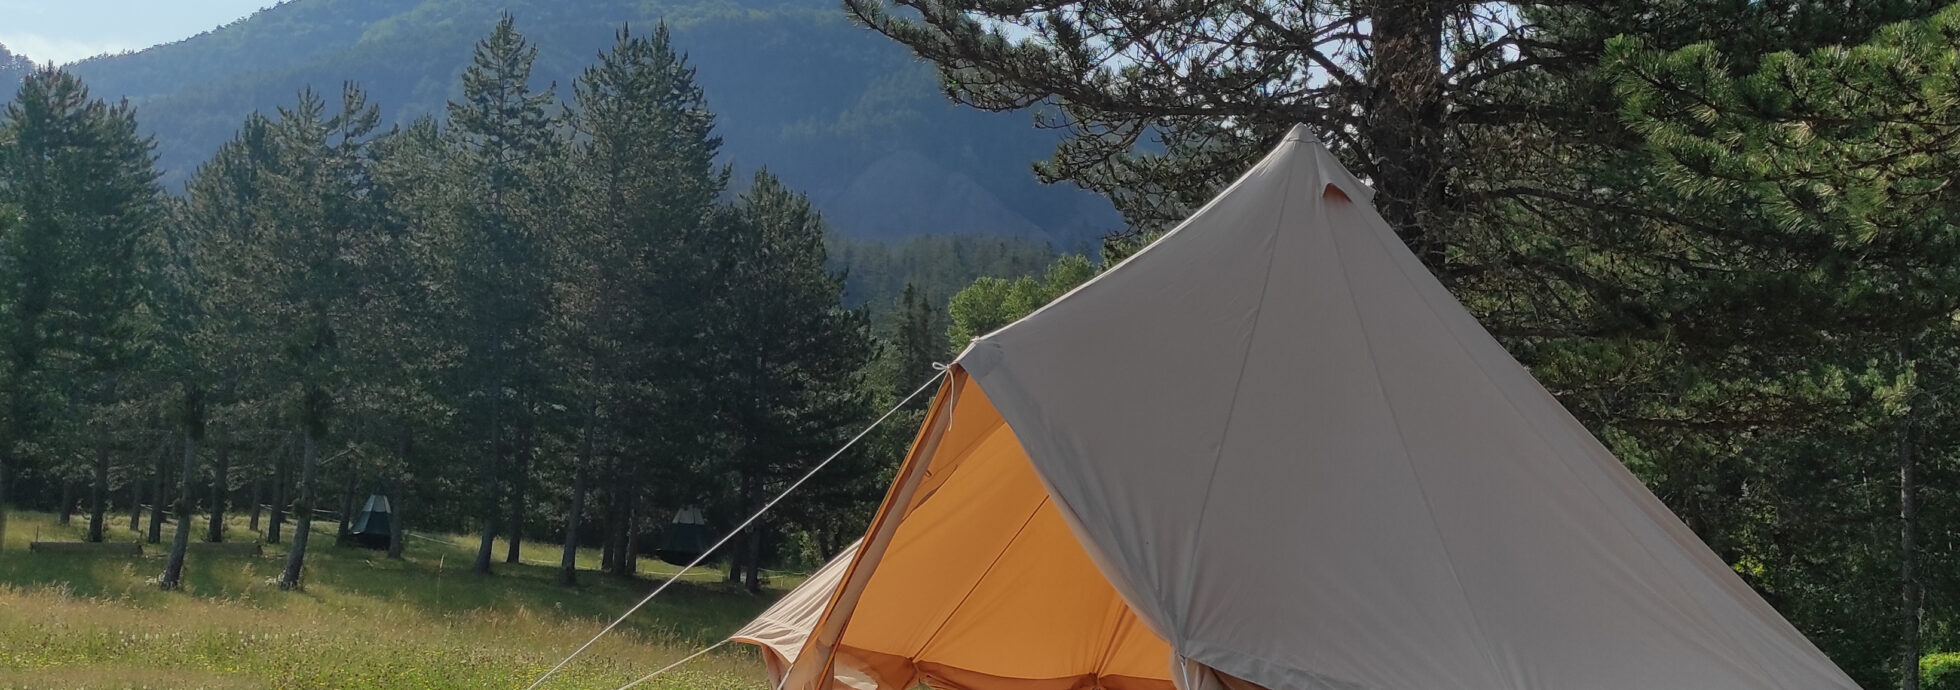 tente-bell-camping-nature-04-la-motte-du-caire